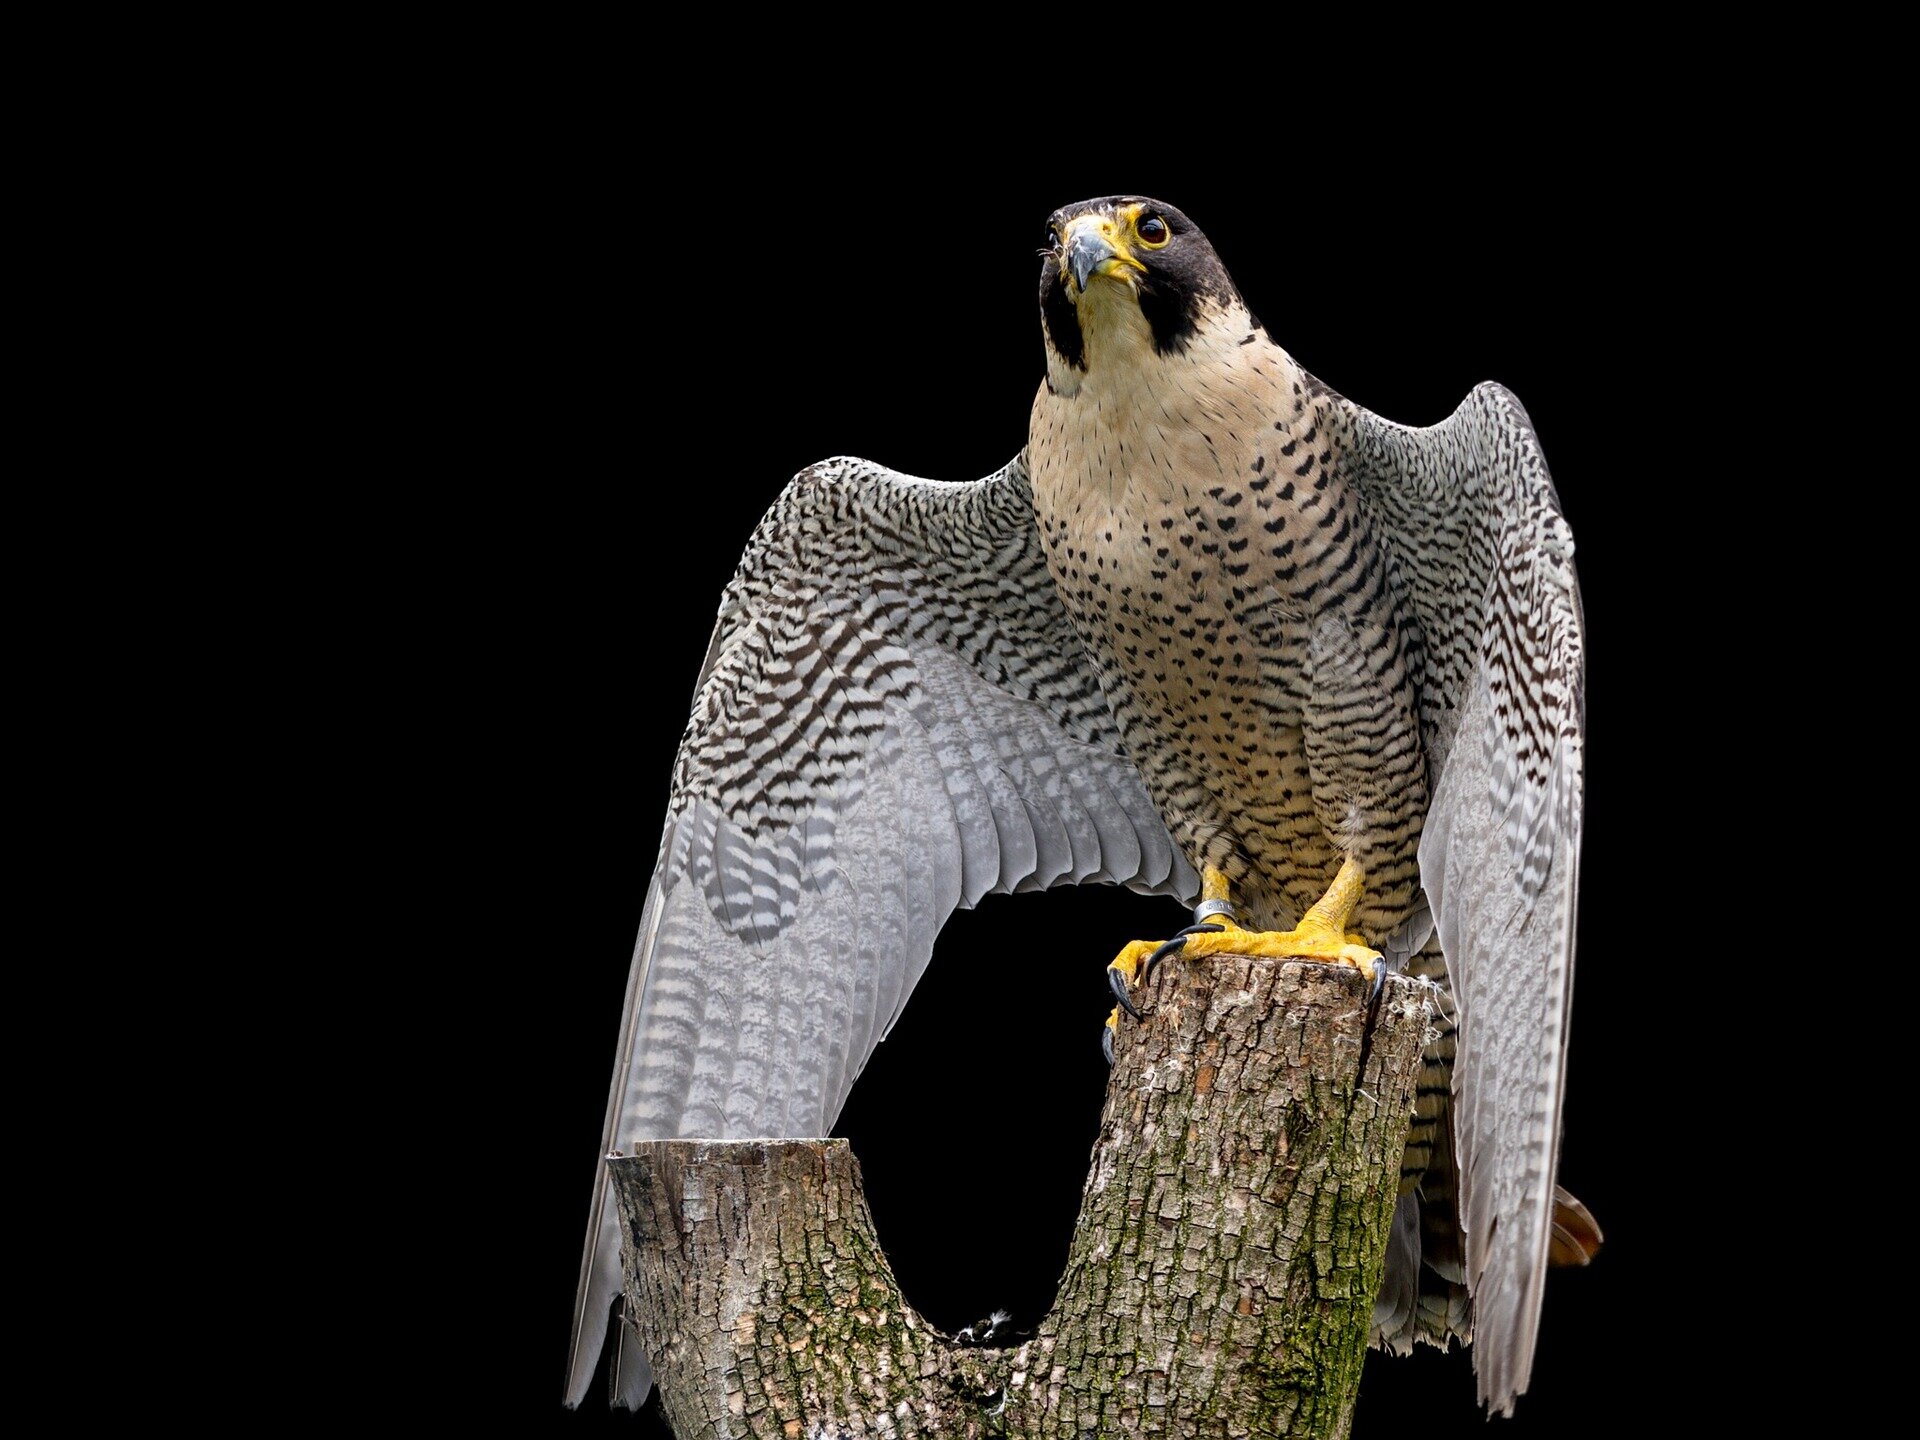 Peregrine falcons set off false alarms to make prey easier to catch ...